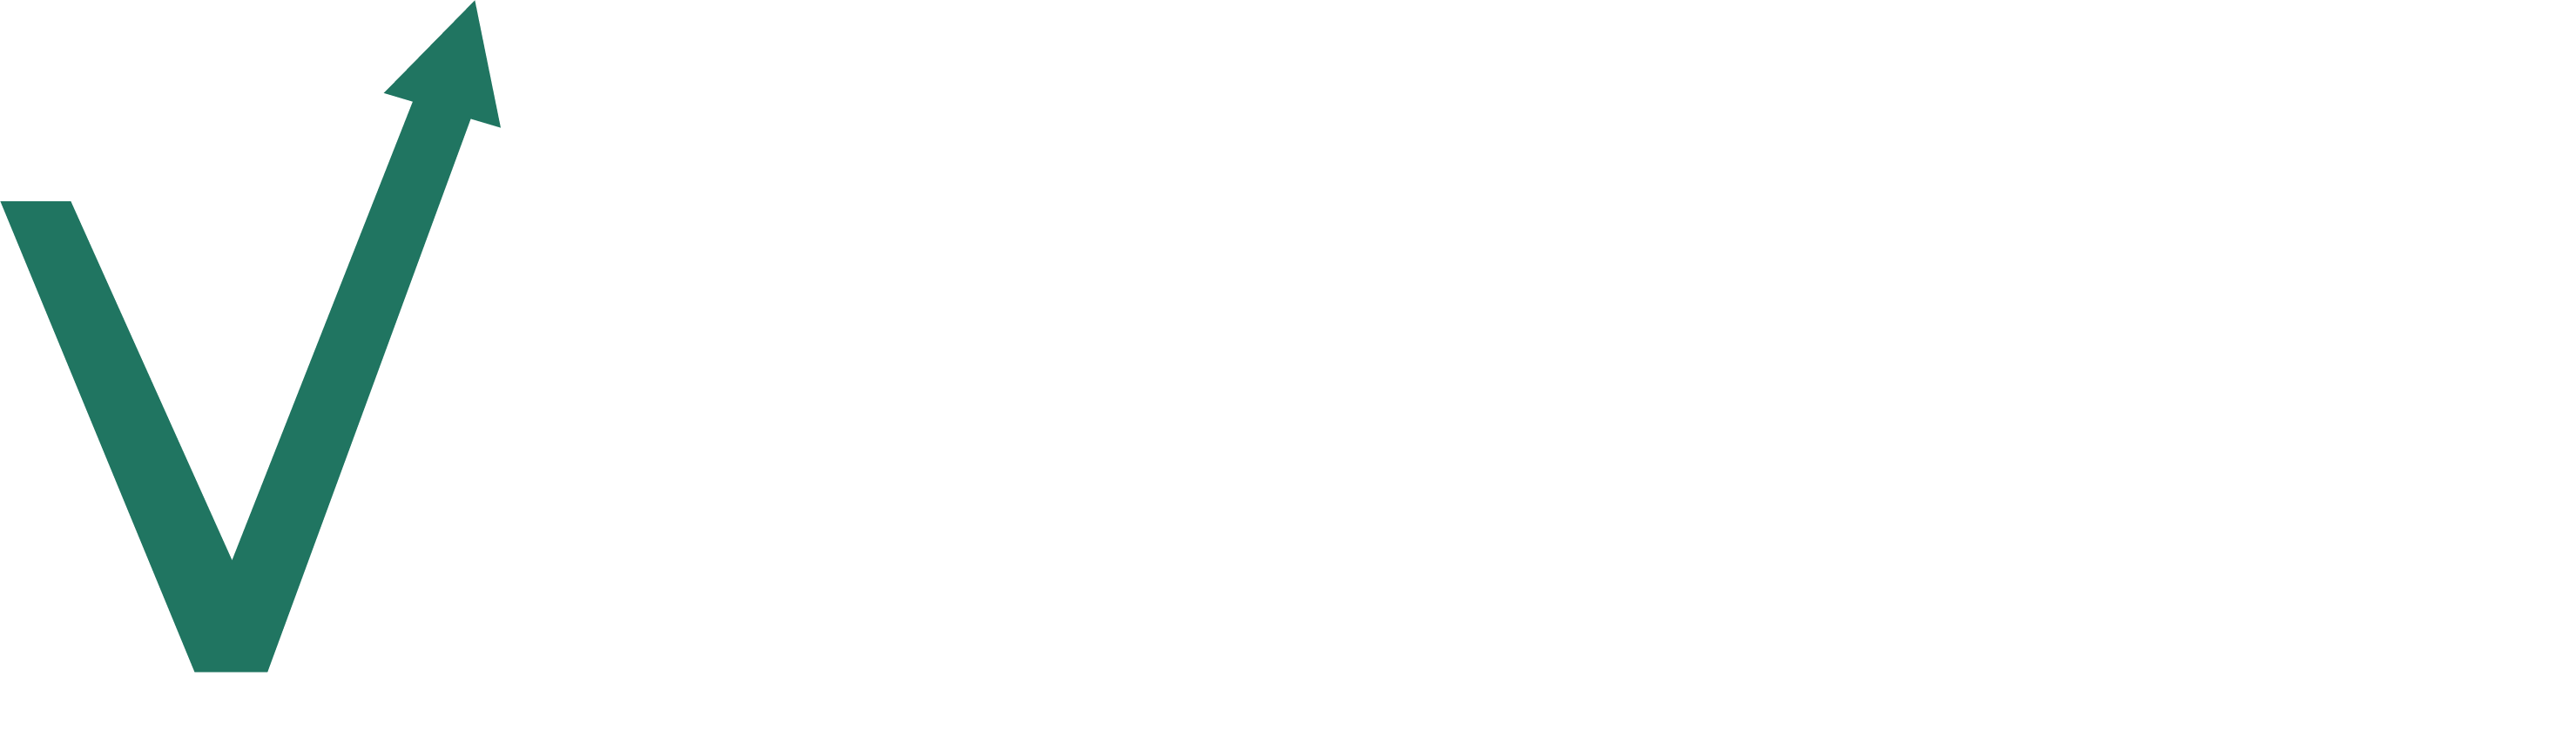 Varmo – Gestión externa online y presencial de administración y finanzas